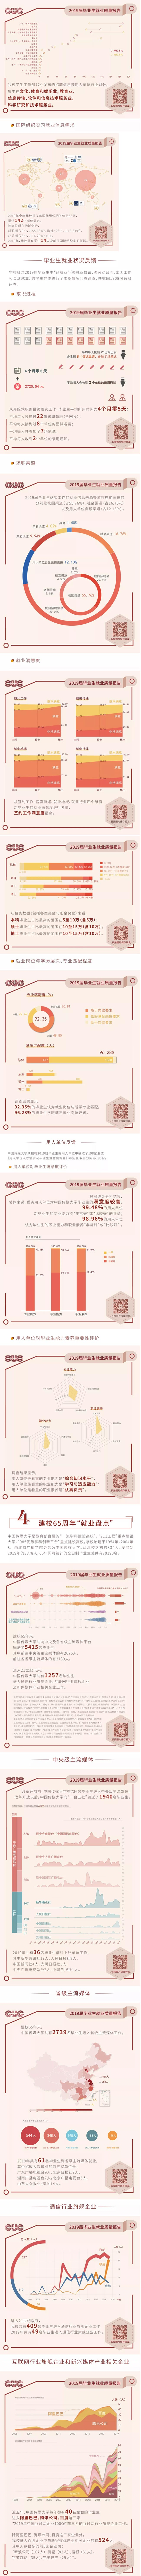 中国传媒大学2019届毕业生就业质量报告发布 总体就业率97.19%